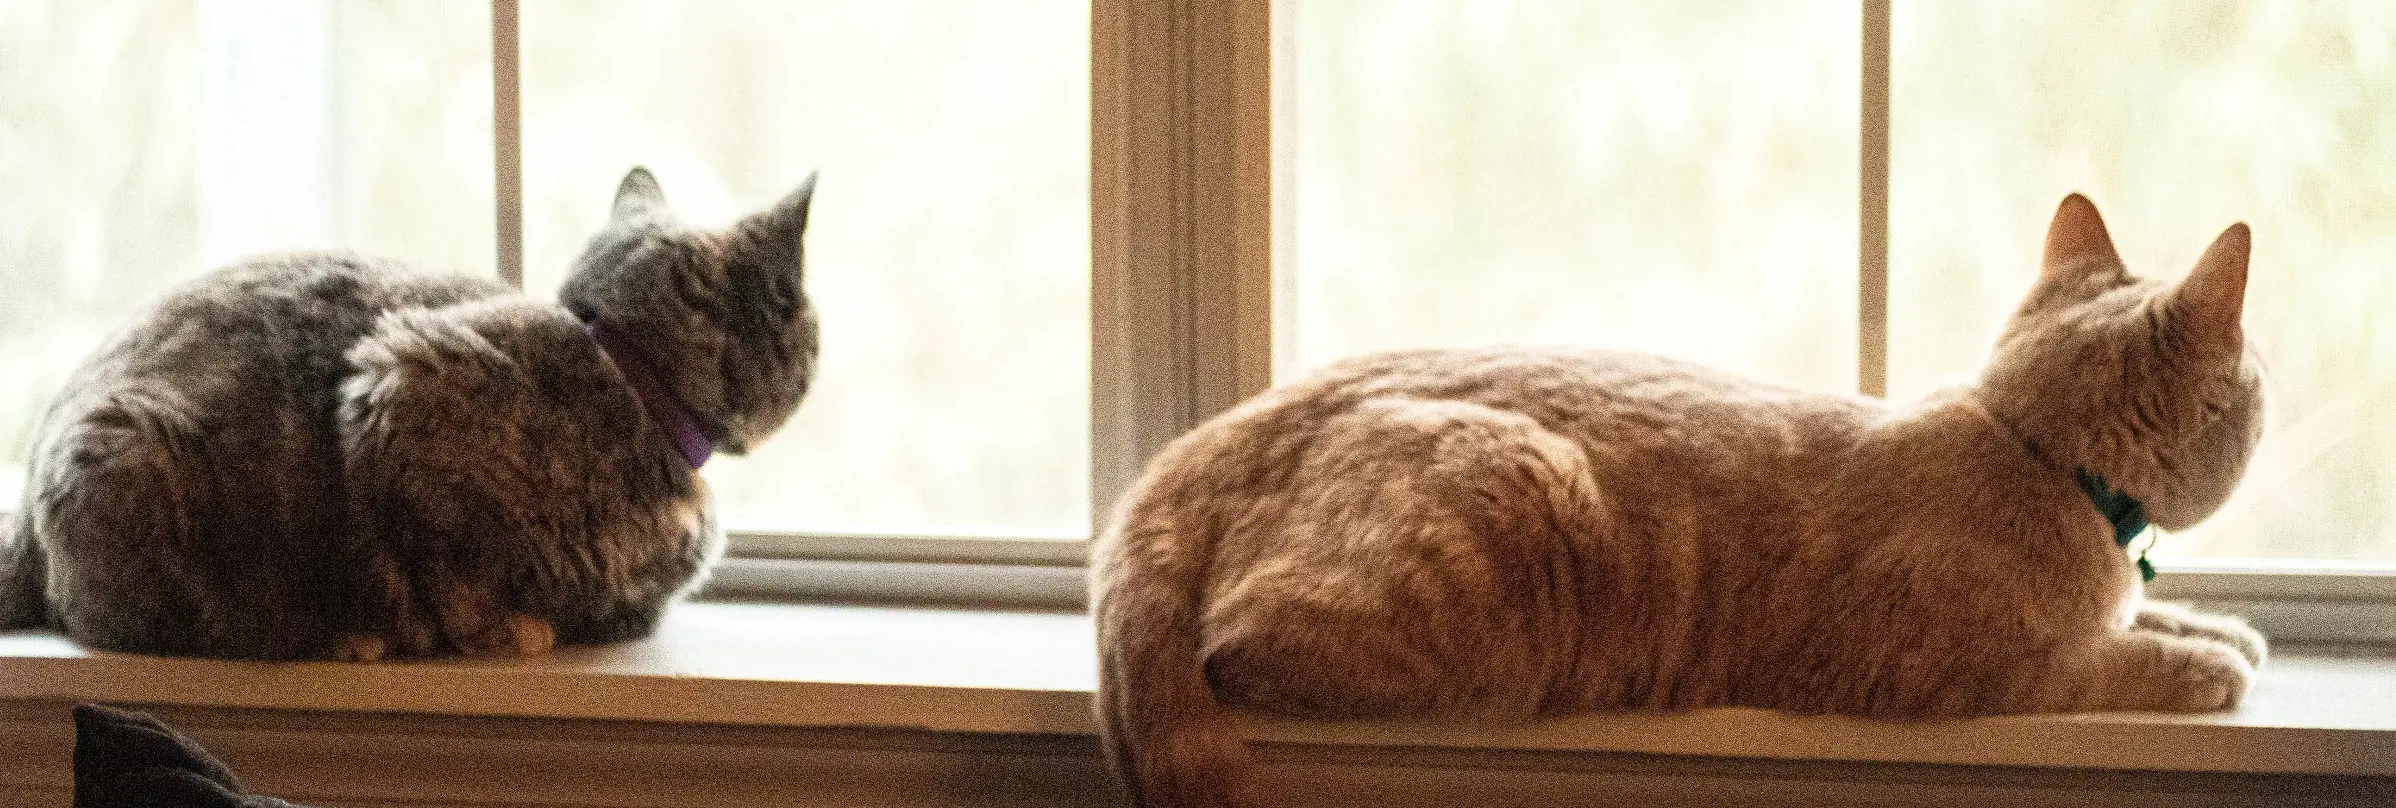 Två katter på fönsterbräde tittar ut genom fönstret